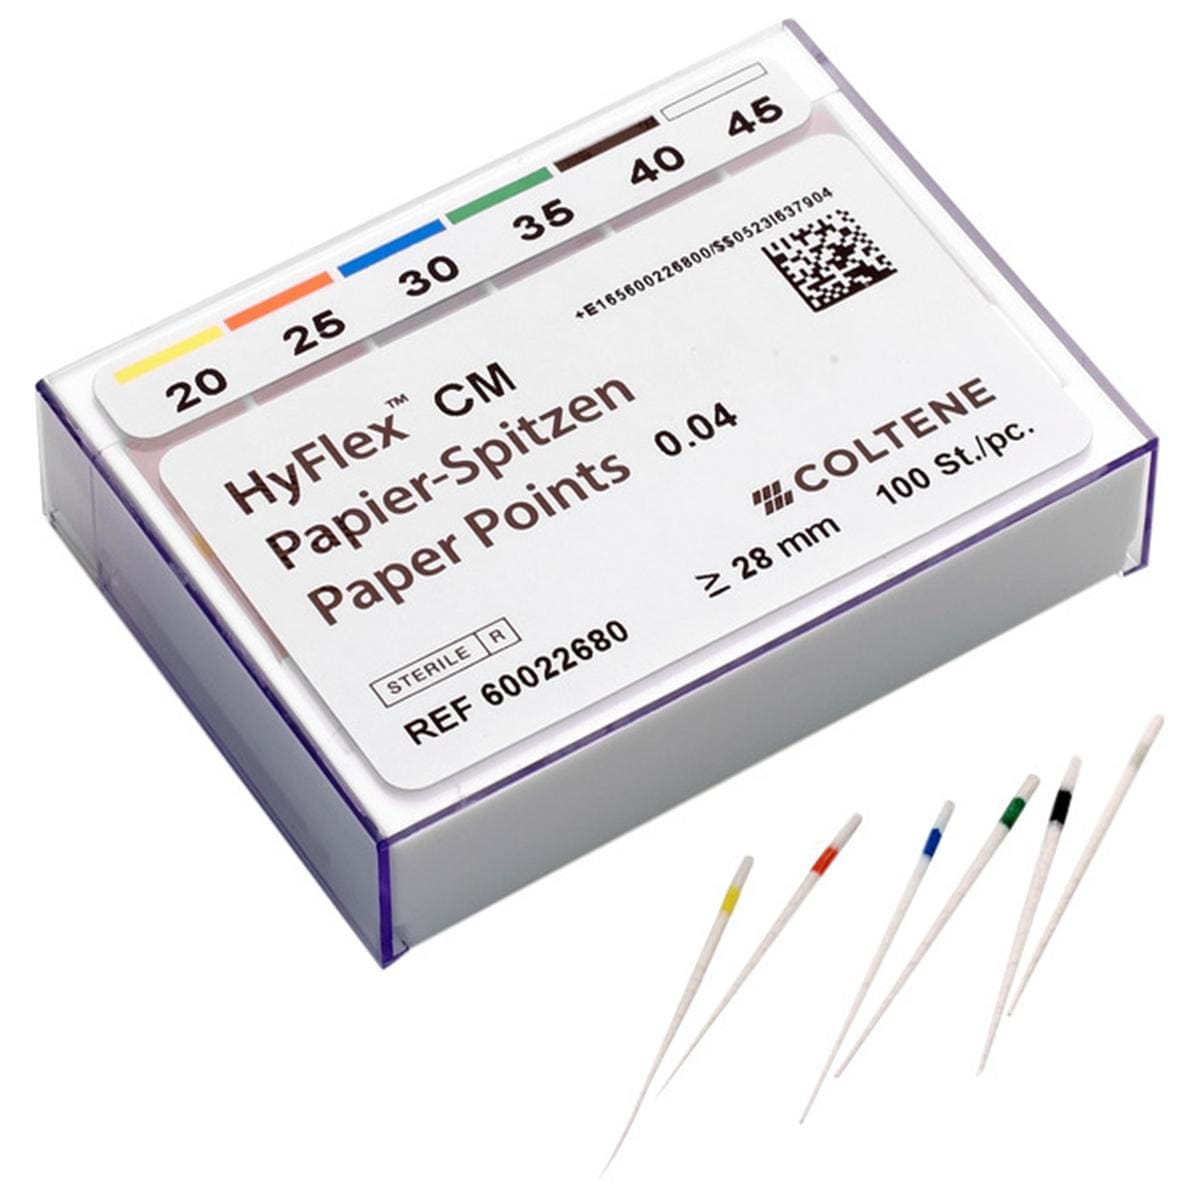 HyFlex™ CM Papierspitzen - Konizität 04, ISO 020 - 045, Packung 100 Stück